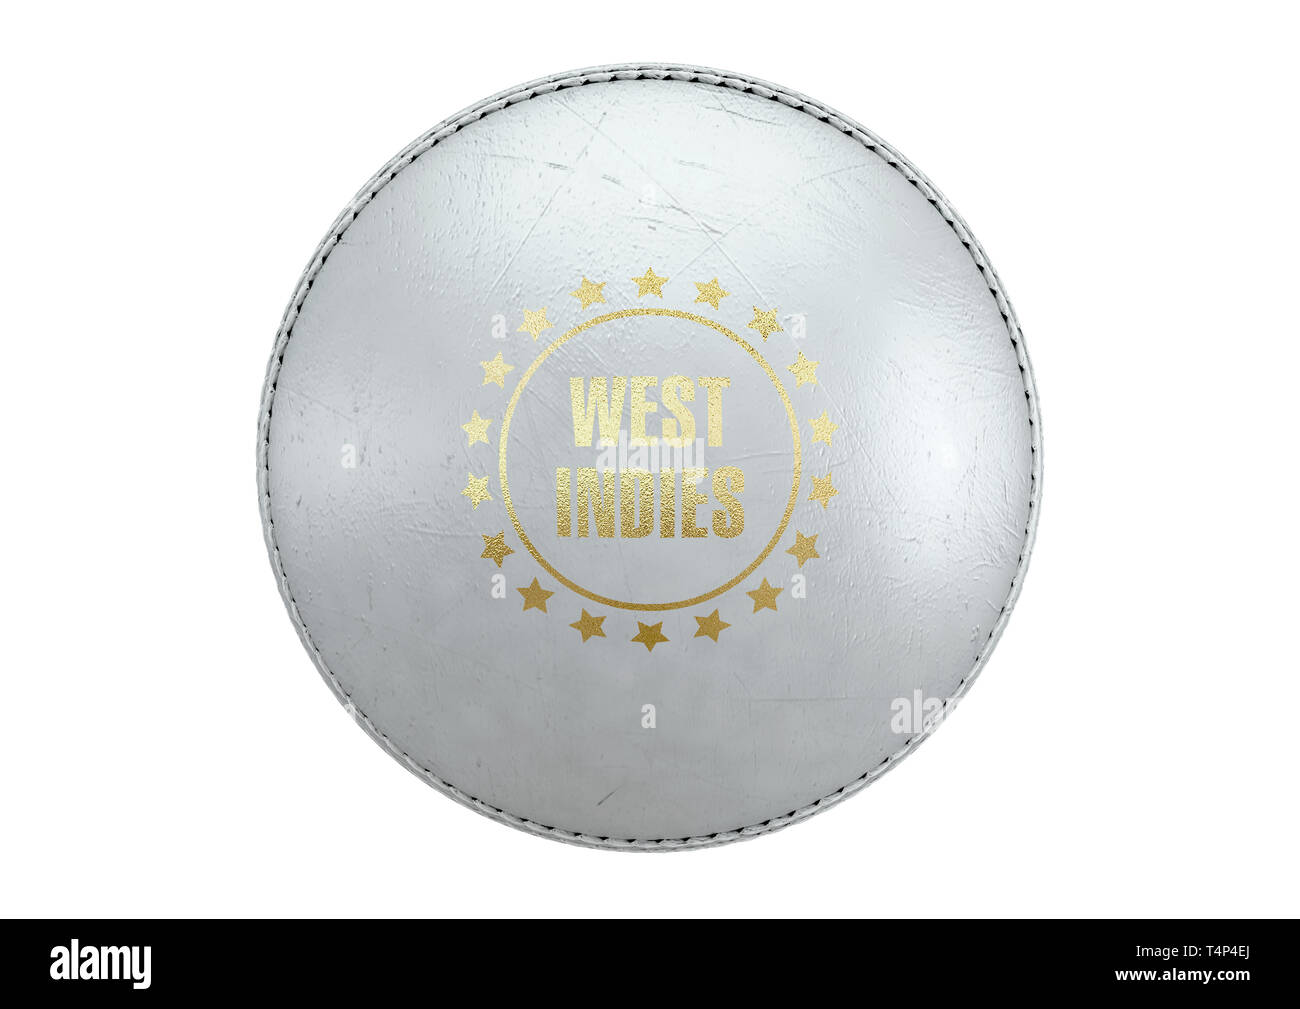 Una vista lateral de una bola de cricket blanco con una lámina de oro área de marca y el nombre del país de las Indias Occidentales en una aislada de fondo - 3D Render Foto de stock